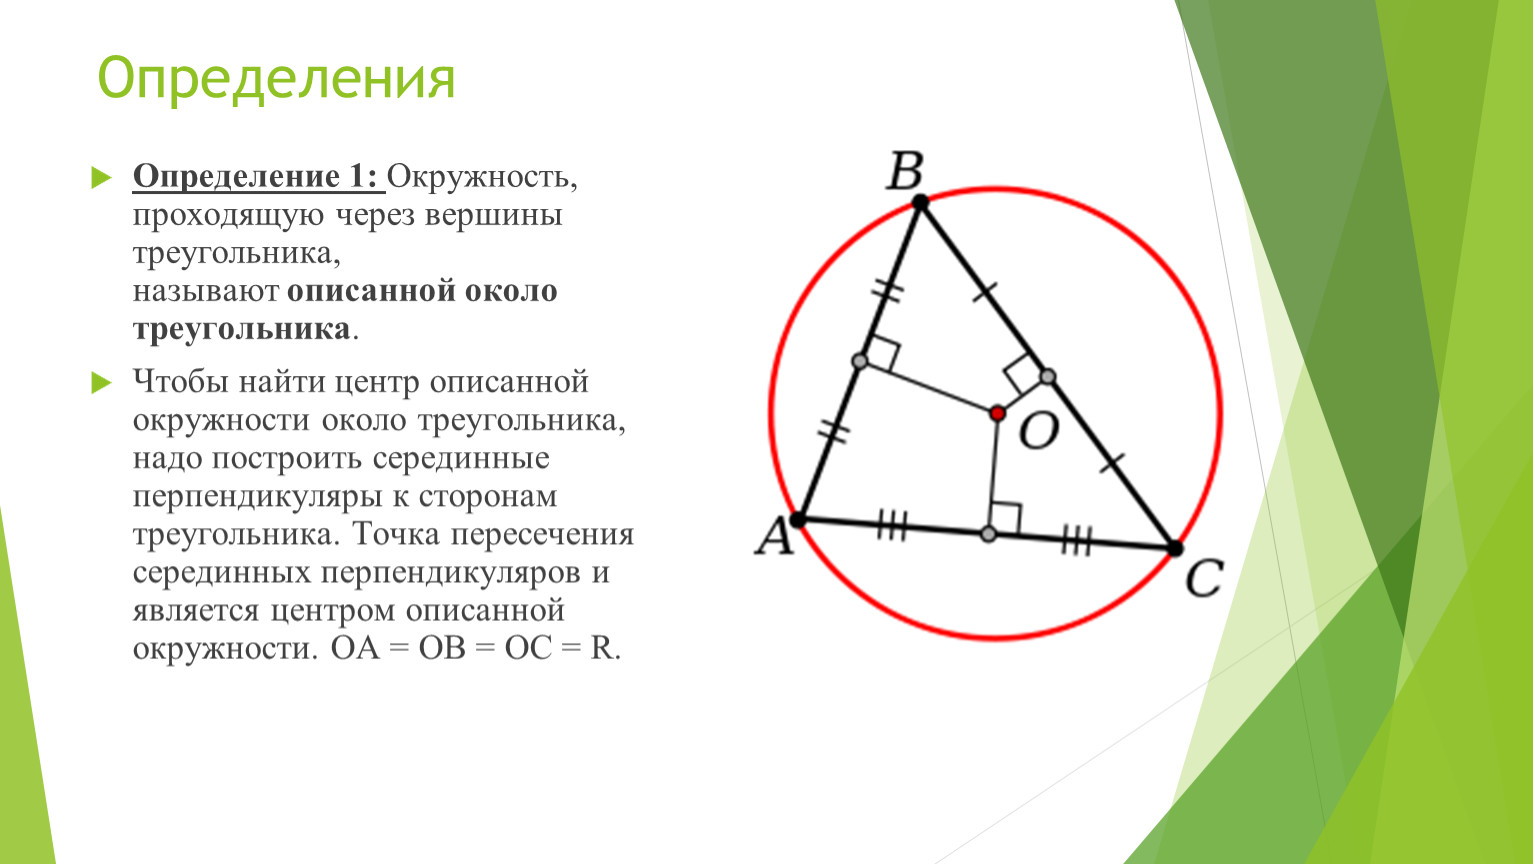 Серединный перпендикуляр к сторонам остроугольного. Центр описанной окружности треугольника. Центр вписанной окружности треугольника. Описанная окружность треугольника. Круг вписанный в треугольник.